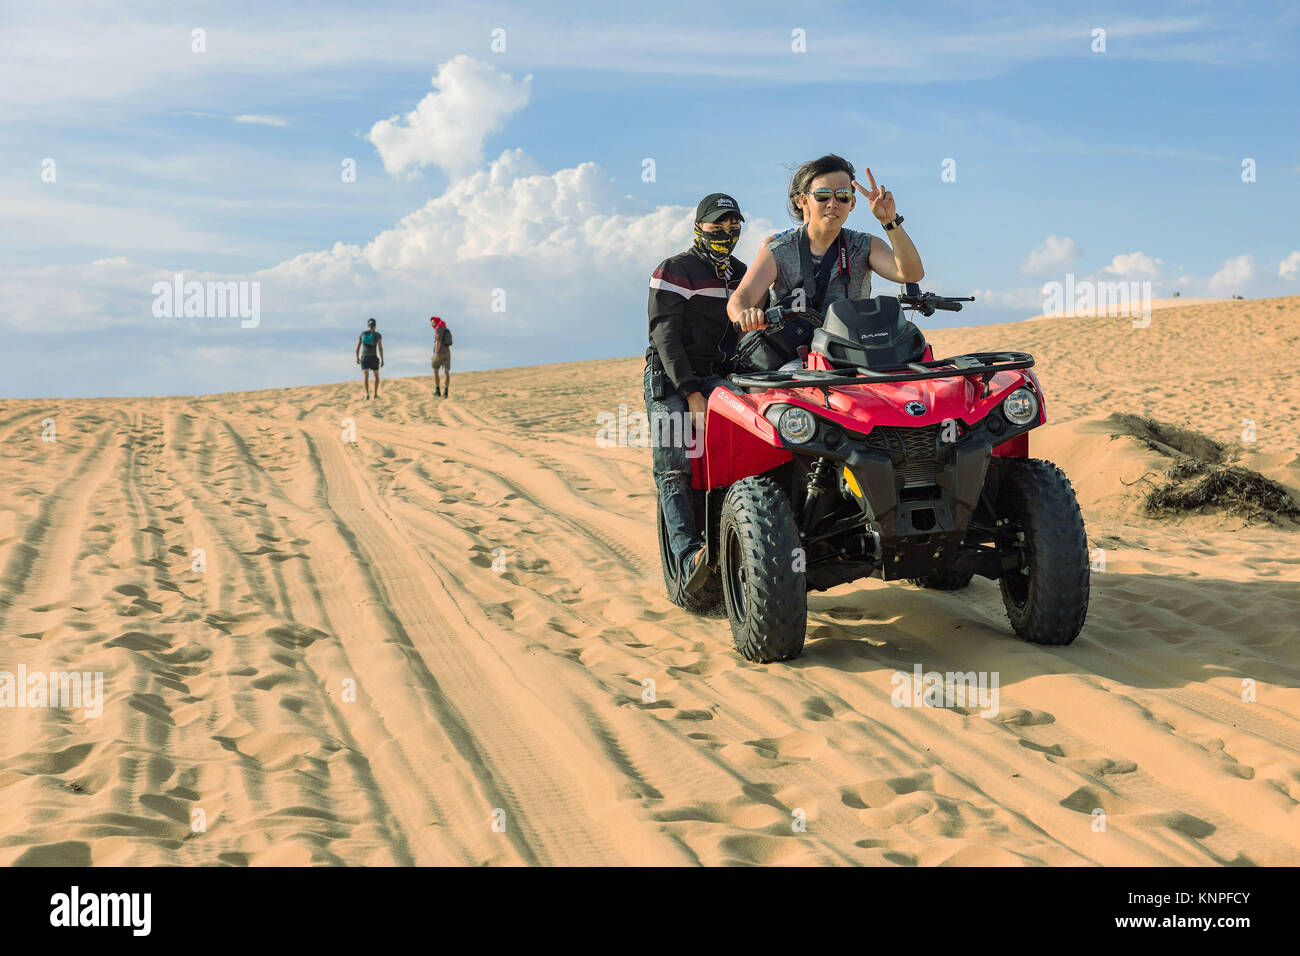 MUI NE, VIETNAM - le 24 mars 2017. Un jeune homme avec un chapeau sur sa tête s'écoule sur la route des dunes de sable.. Location de véhicule hors route dans le désert de dunes de sable blanc à M Banque D'Images